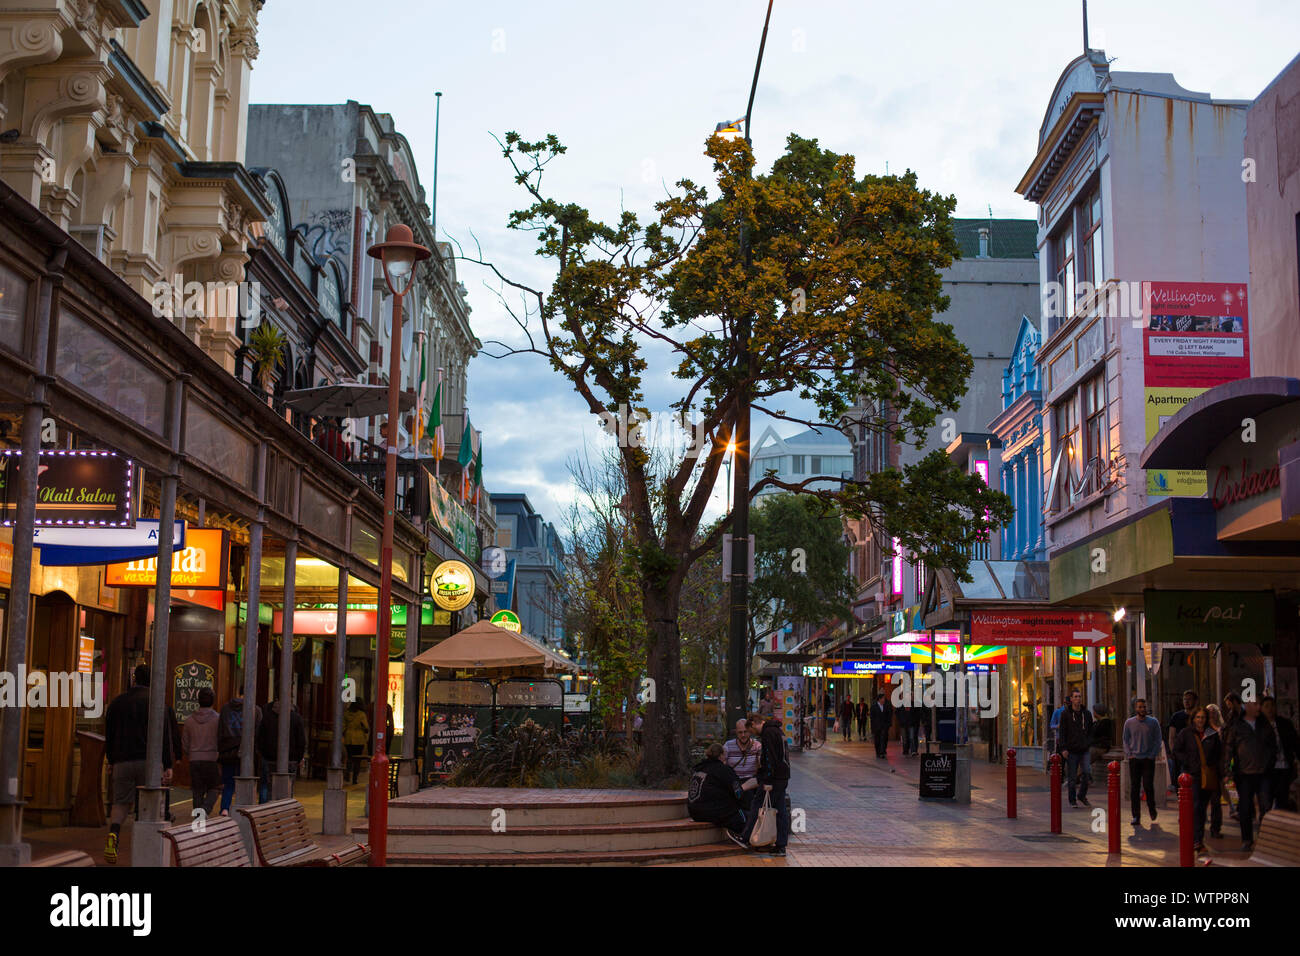 El centro de la calle Cuba, Wellington, Nueva Zelanda. Foto de stock